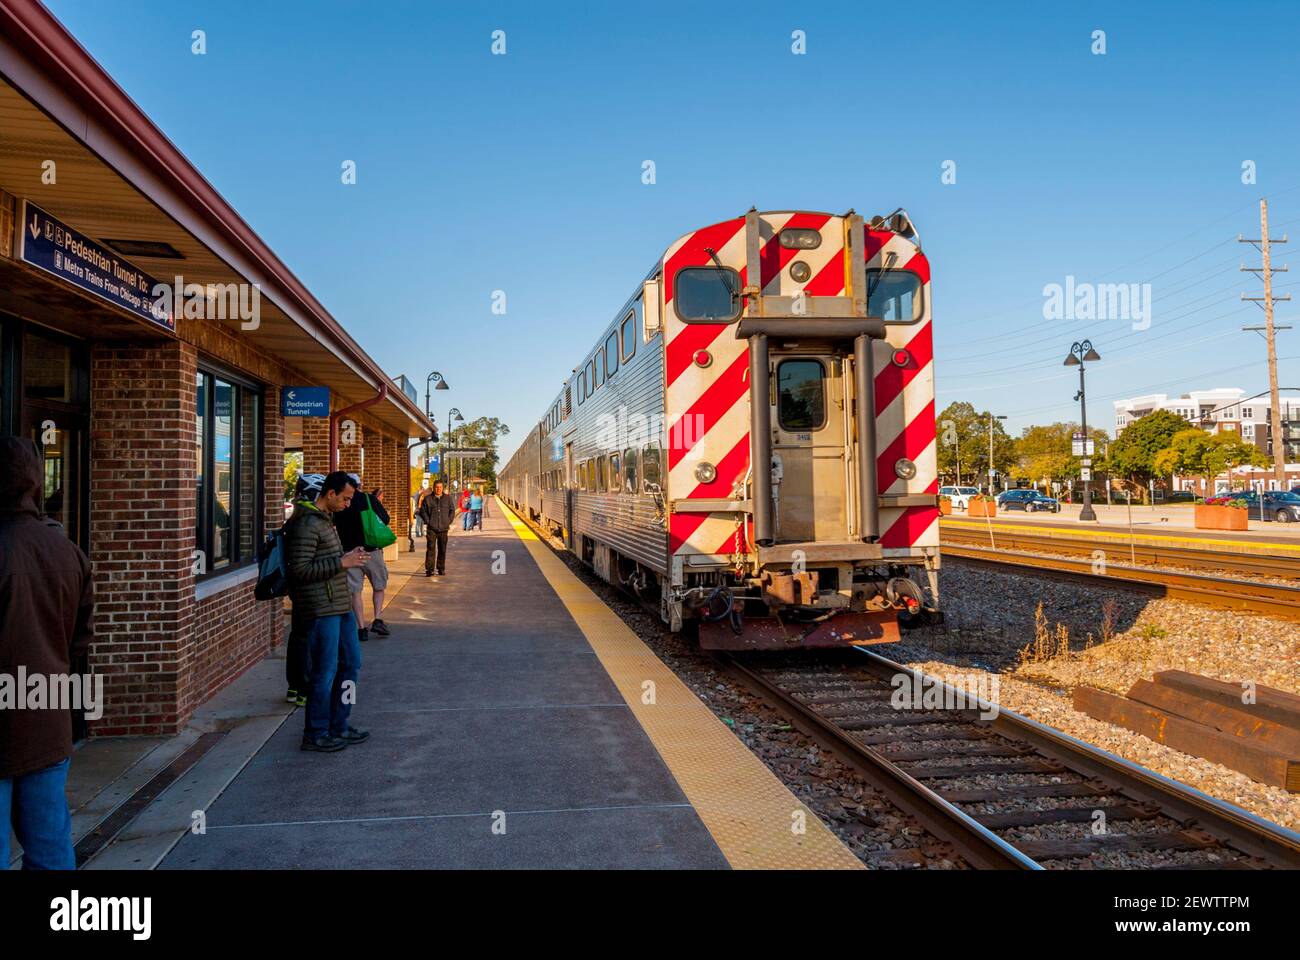 Piattaforma della stazione ferroviaria a Lisle, Illinois, in una giornata di sole con treno passeggeri in piattaforma Foto Stock